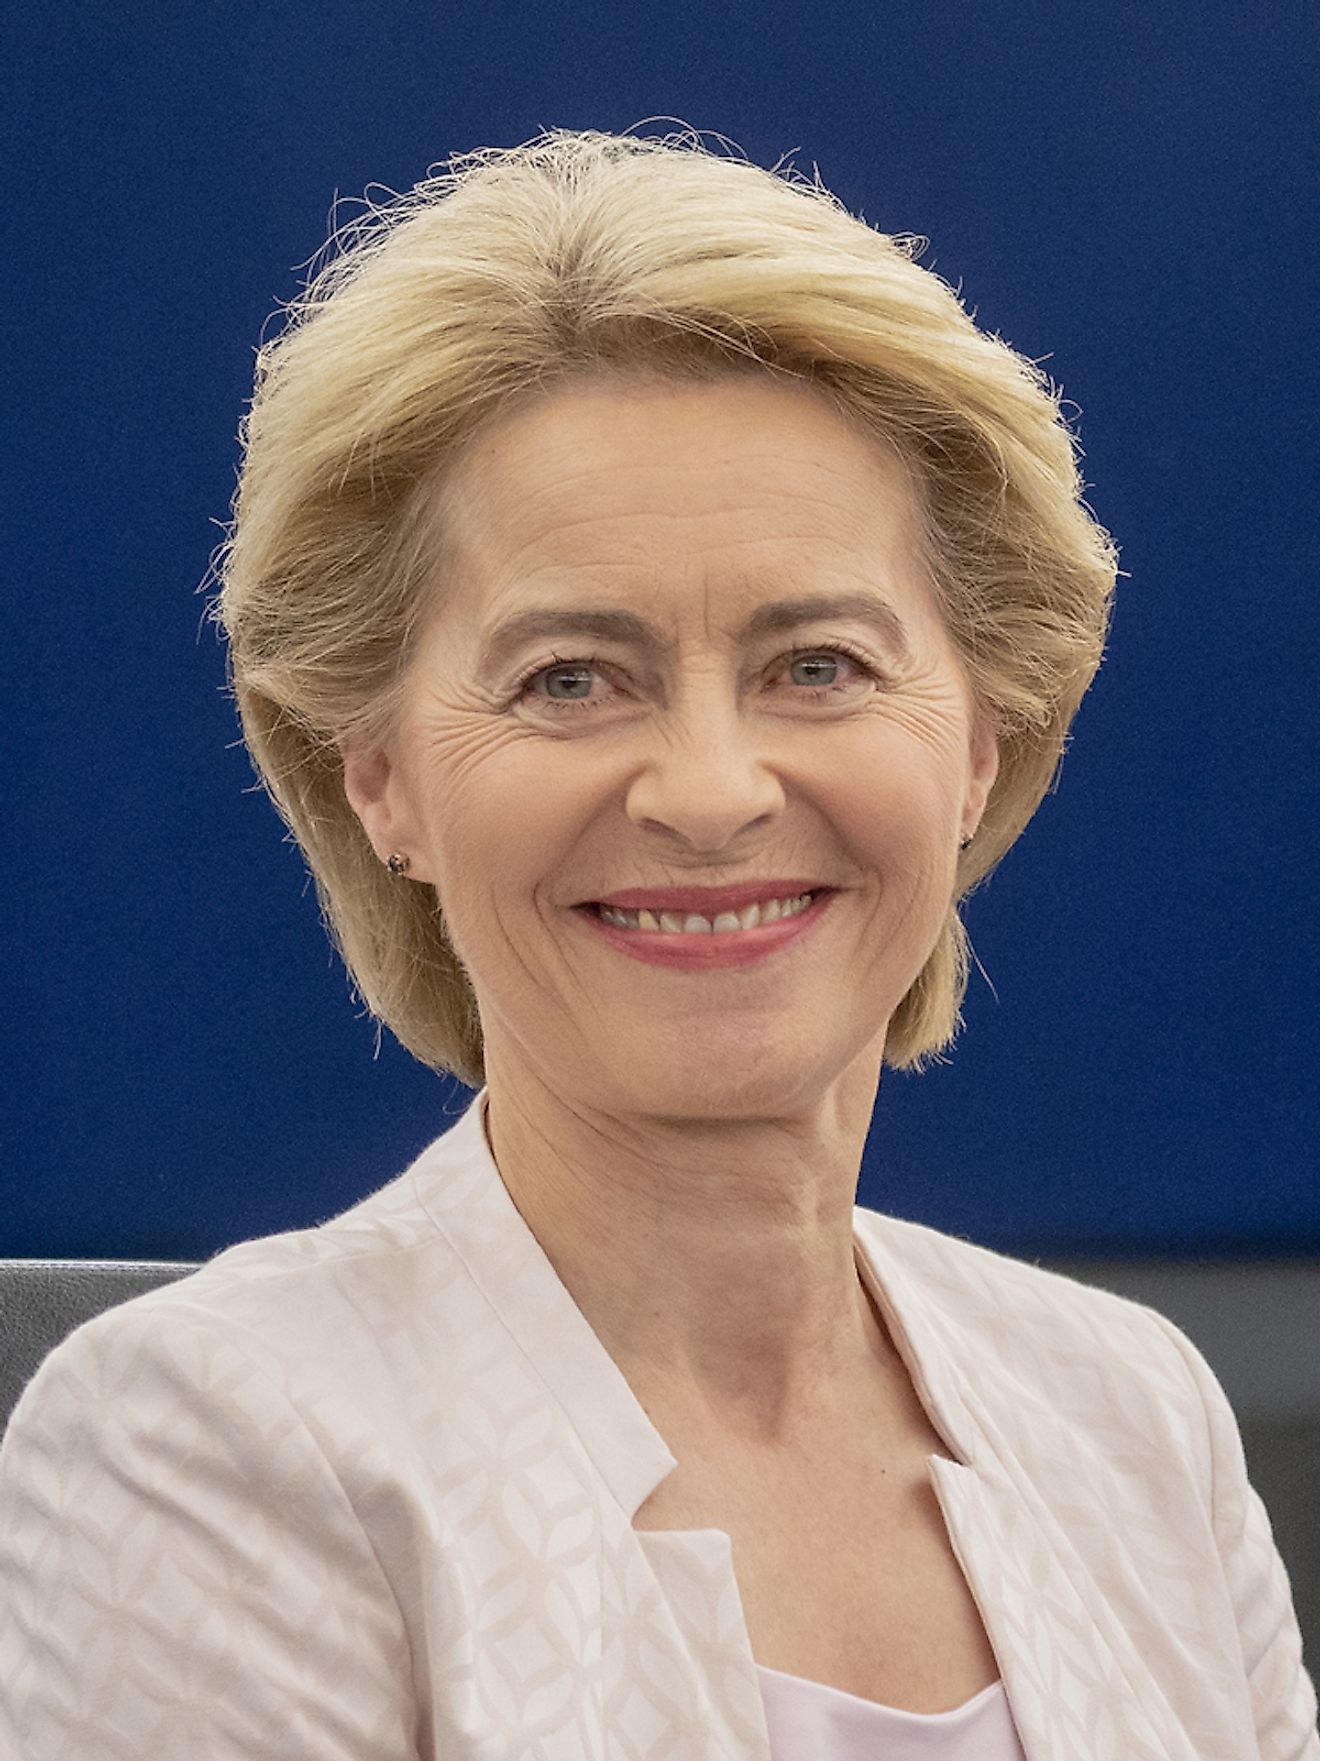 Ursula von der Leyen. Image credit: European Union 2019 – Source: EP/Wikimedia.org